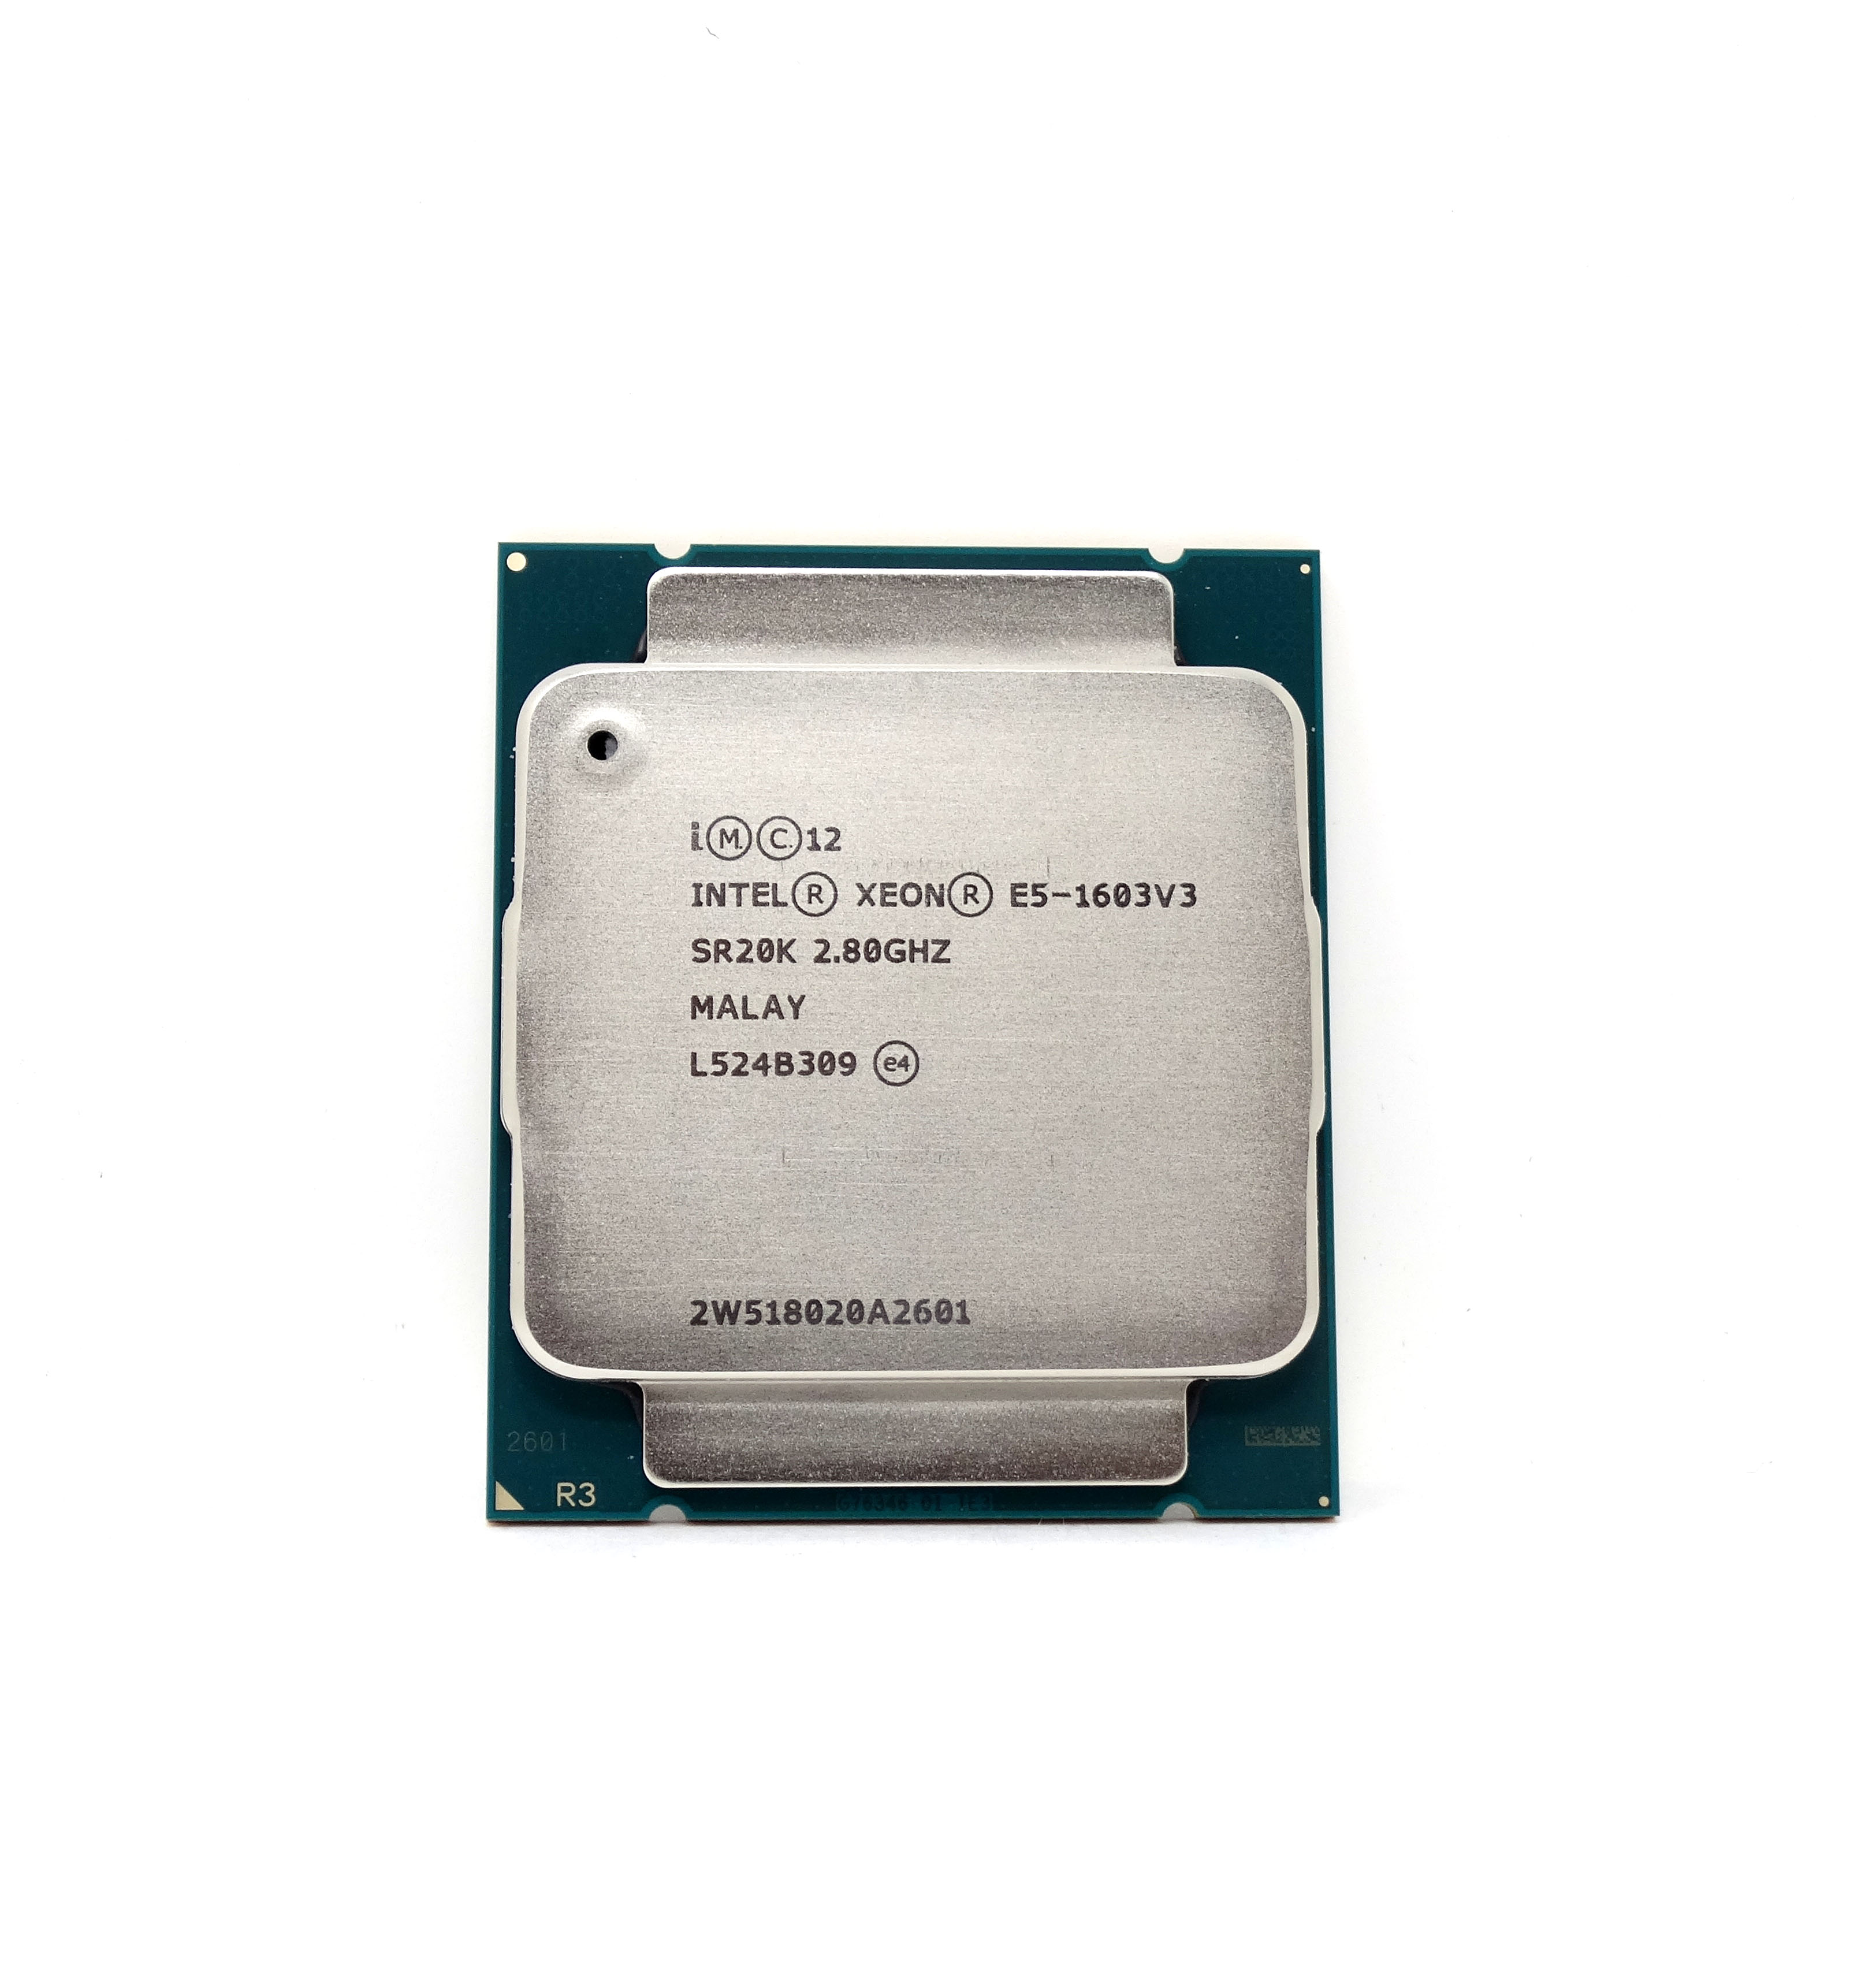 Intel Xeon E5-1603V3 2.80GHz Quad Core 10MB LGA2011 CPU Processor (SR20K)